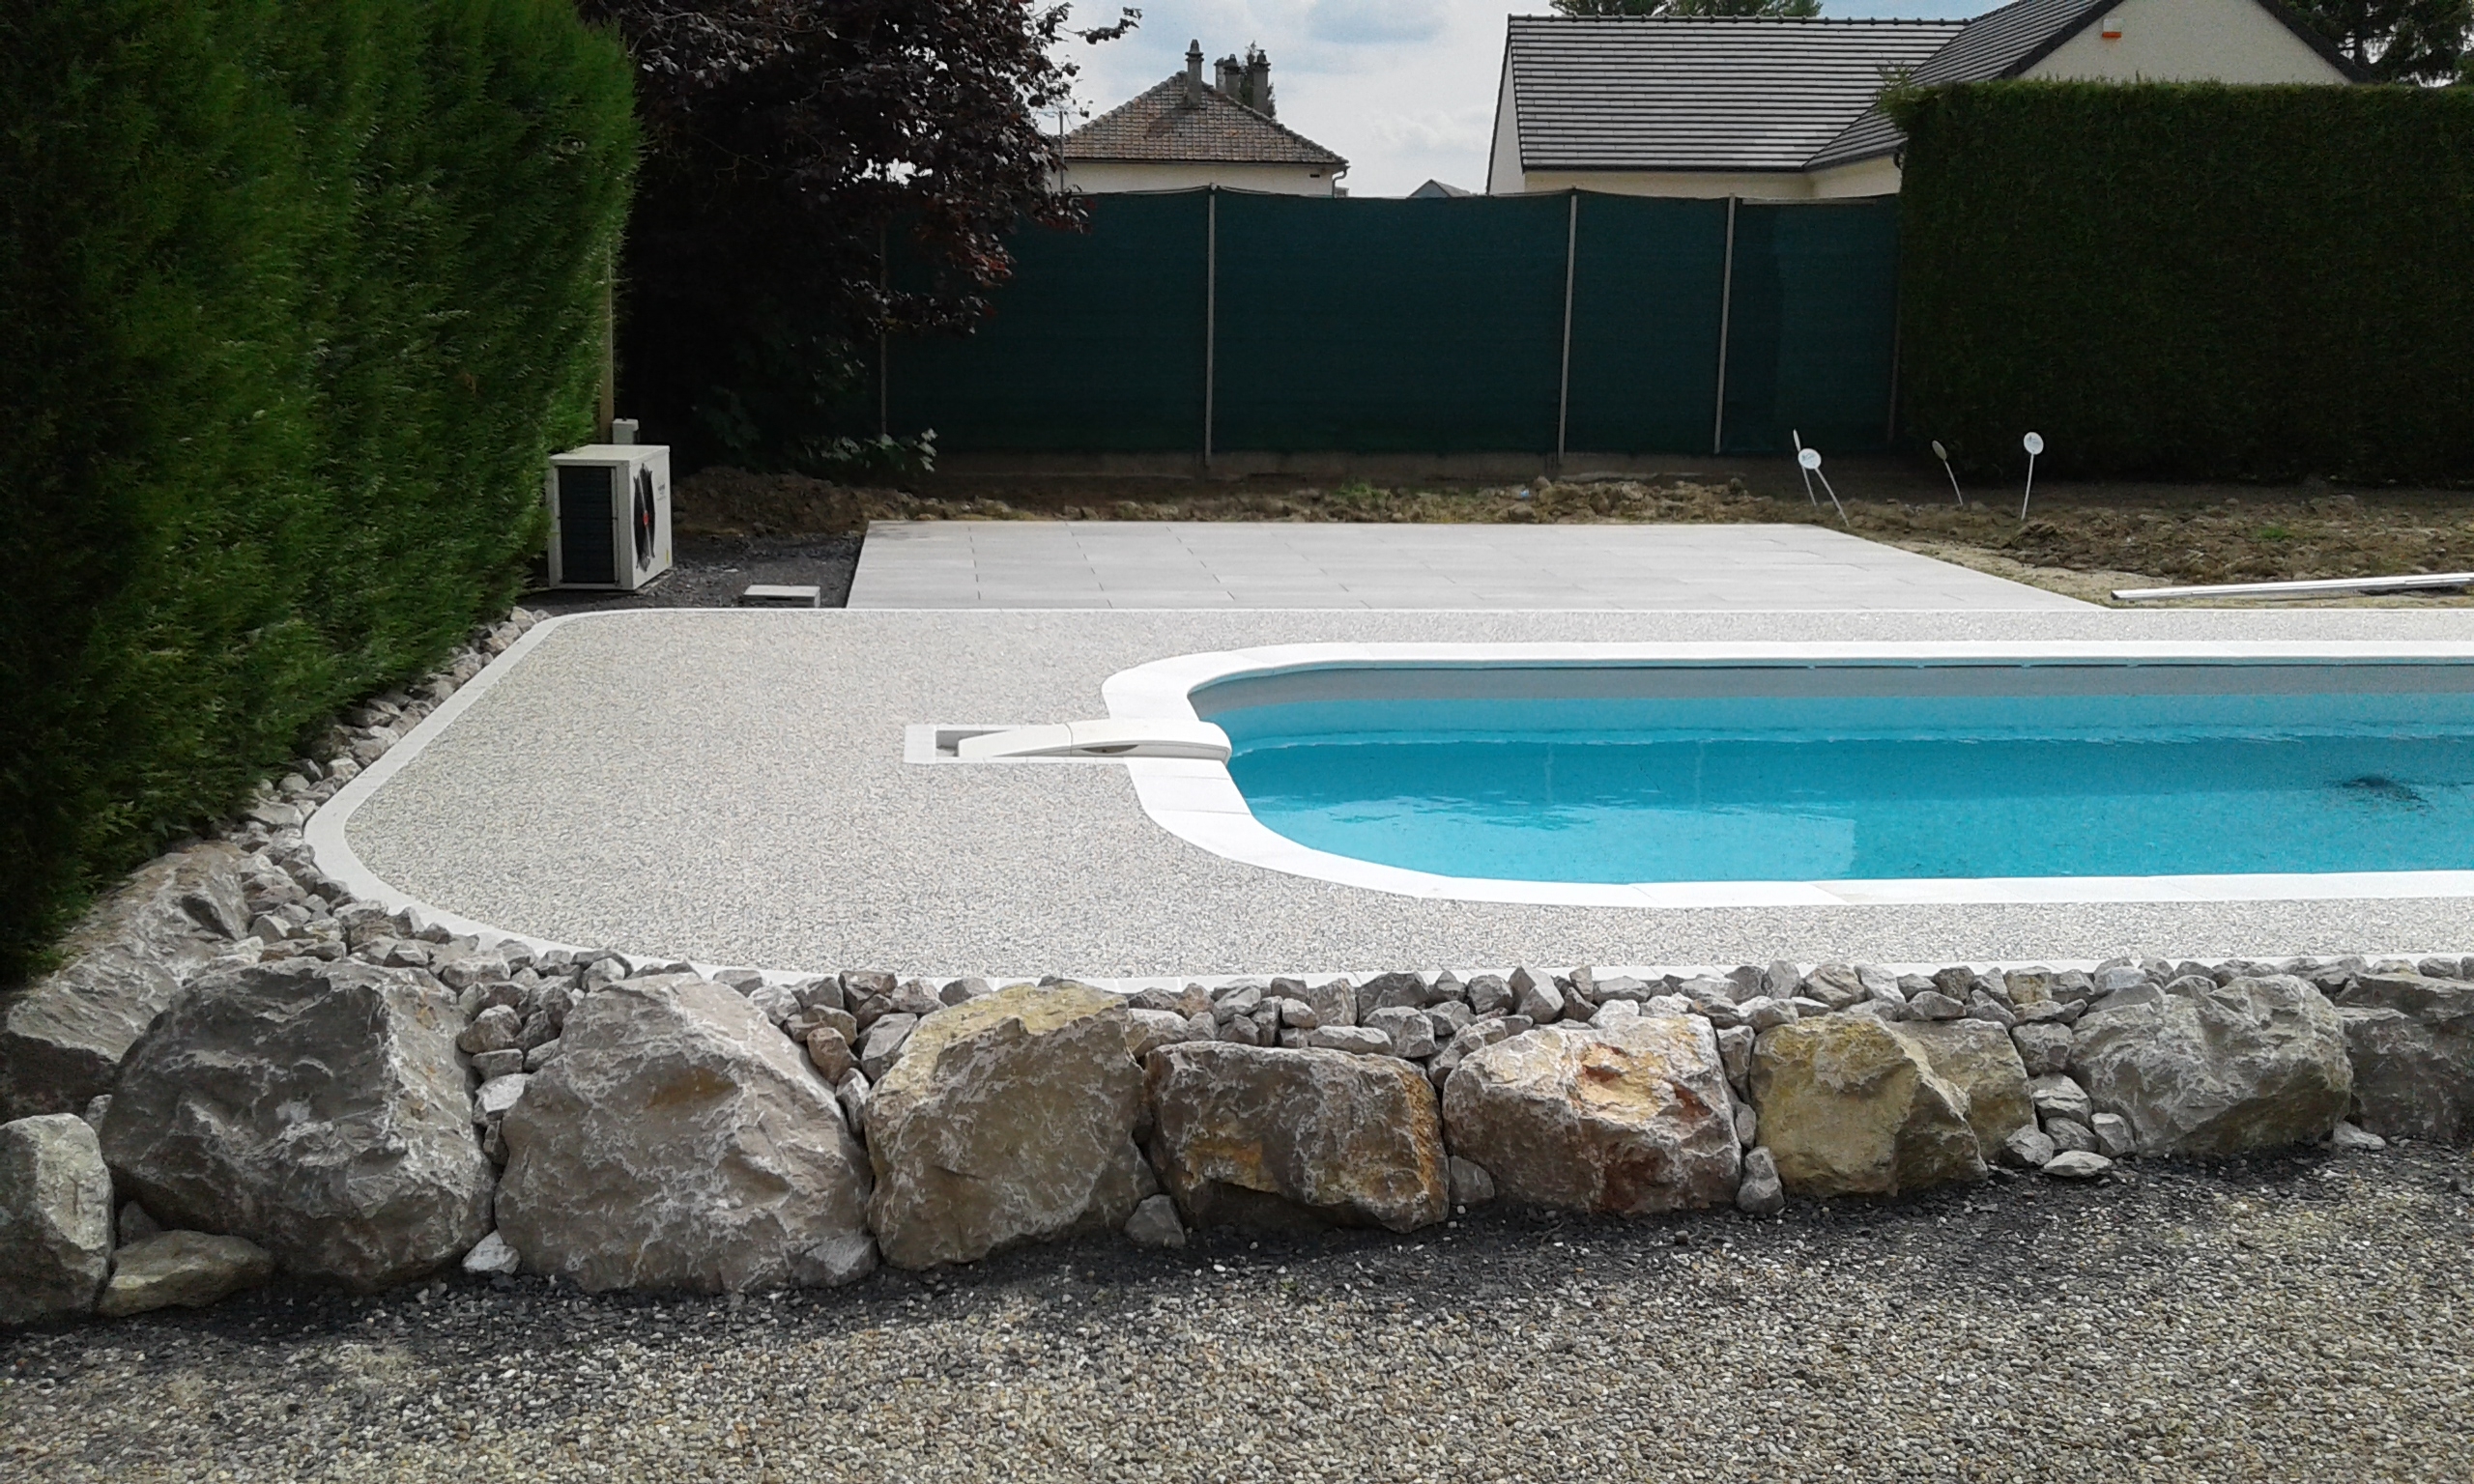 Cration Plage de piscine en Hydrostar et dalles sur plots - Oise conue le 24/06/2019